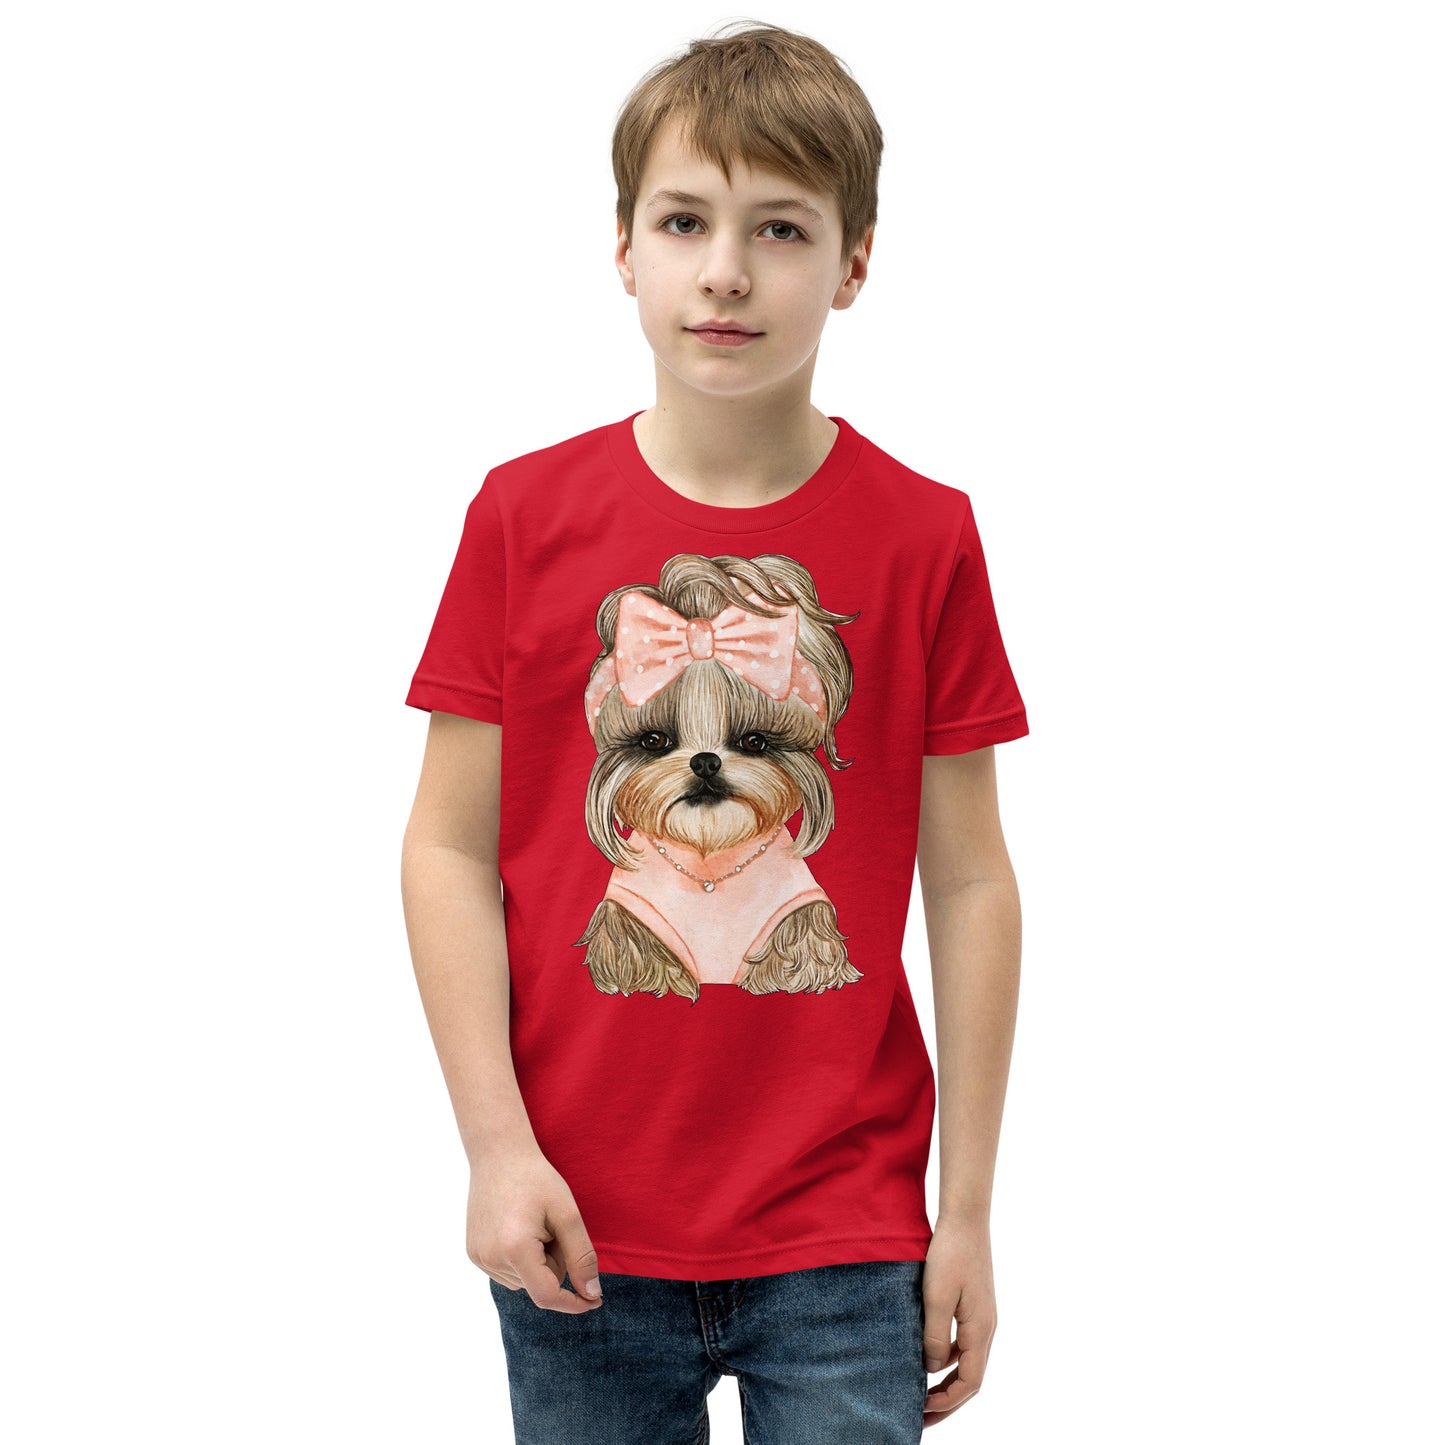 Adorable Dog with Cute Hair Ribbon T-shirt, No. 0561